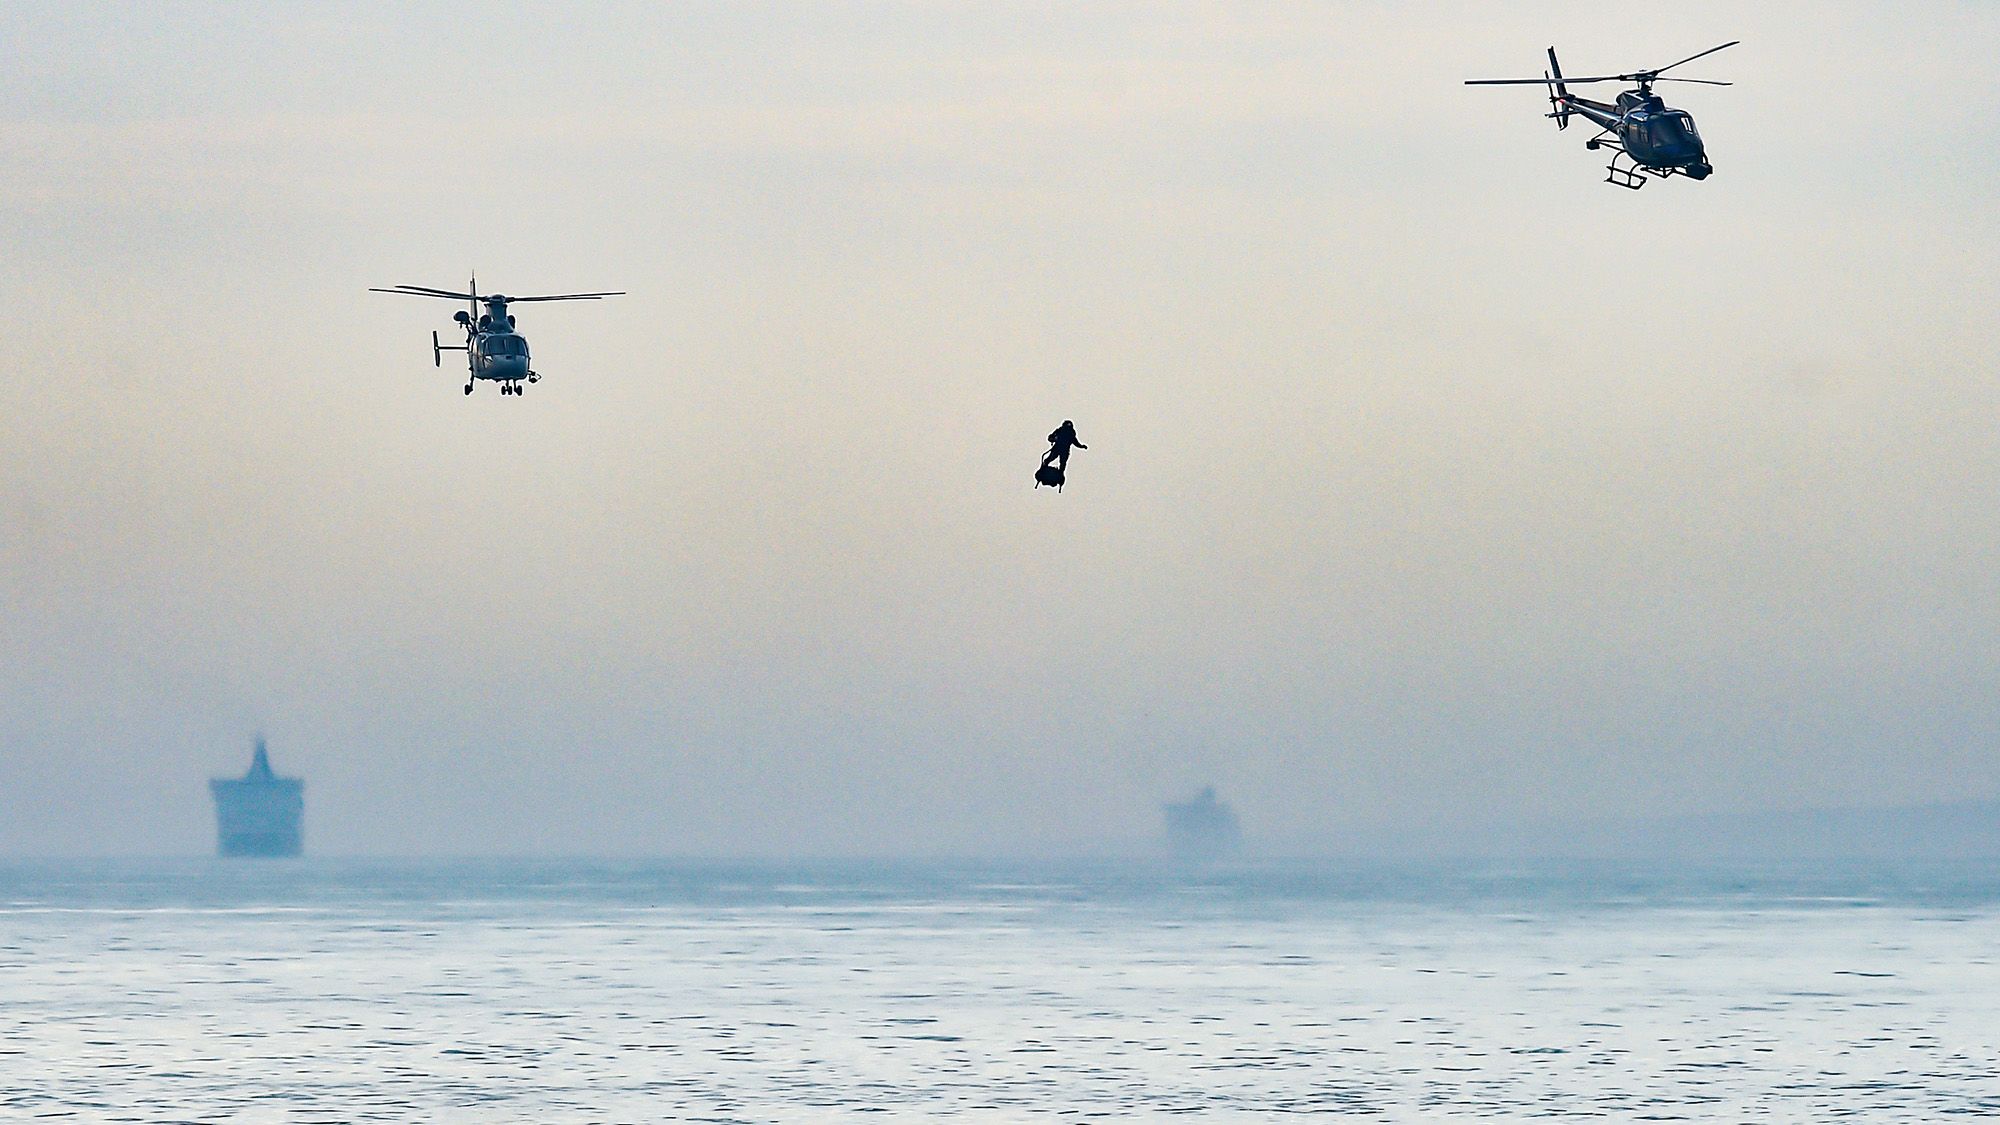 Parádés fotó arról, ahogy egy francia légdeszkás átrepüli a La Manche-csatornát